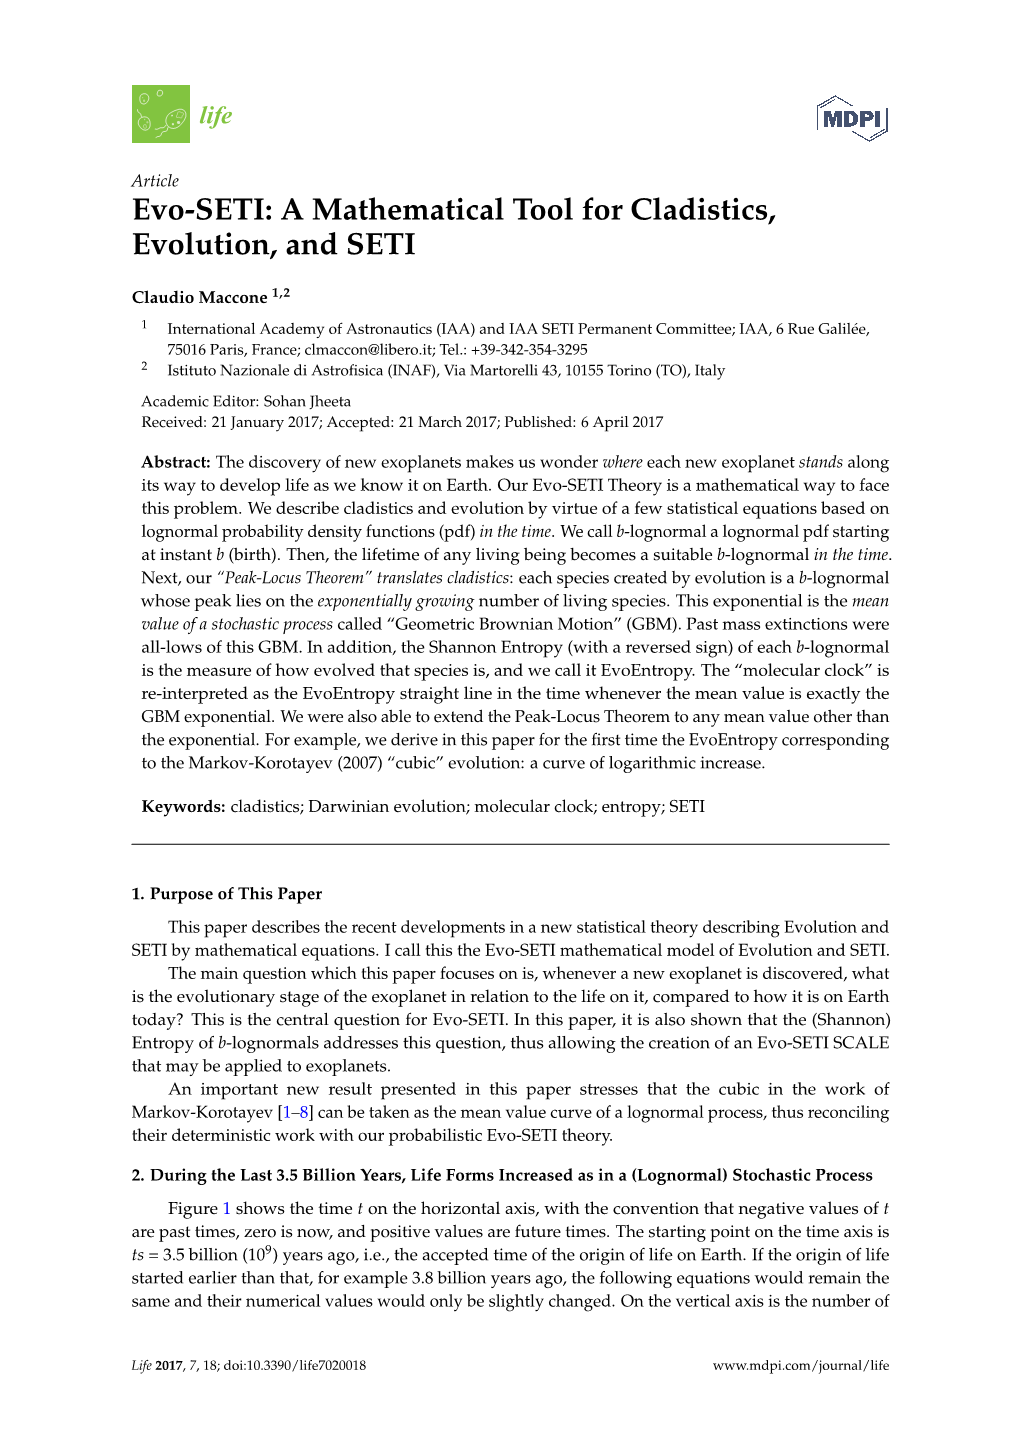 Evo-SETI: a Mathematical Tool for Cladistics, Evolution, and SETI